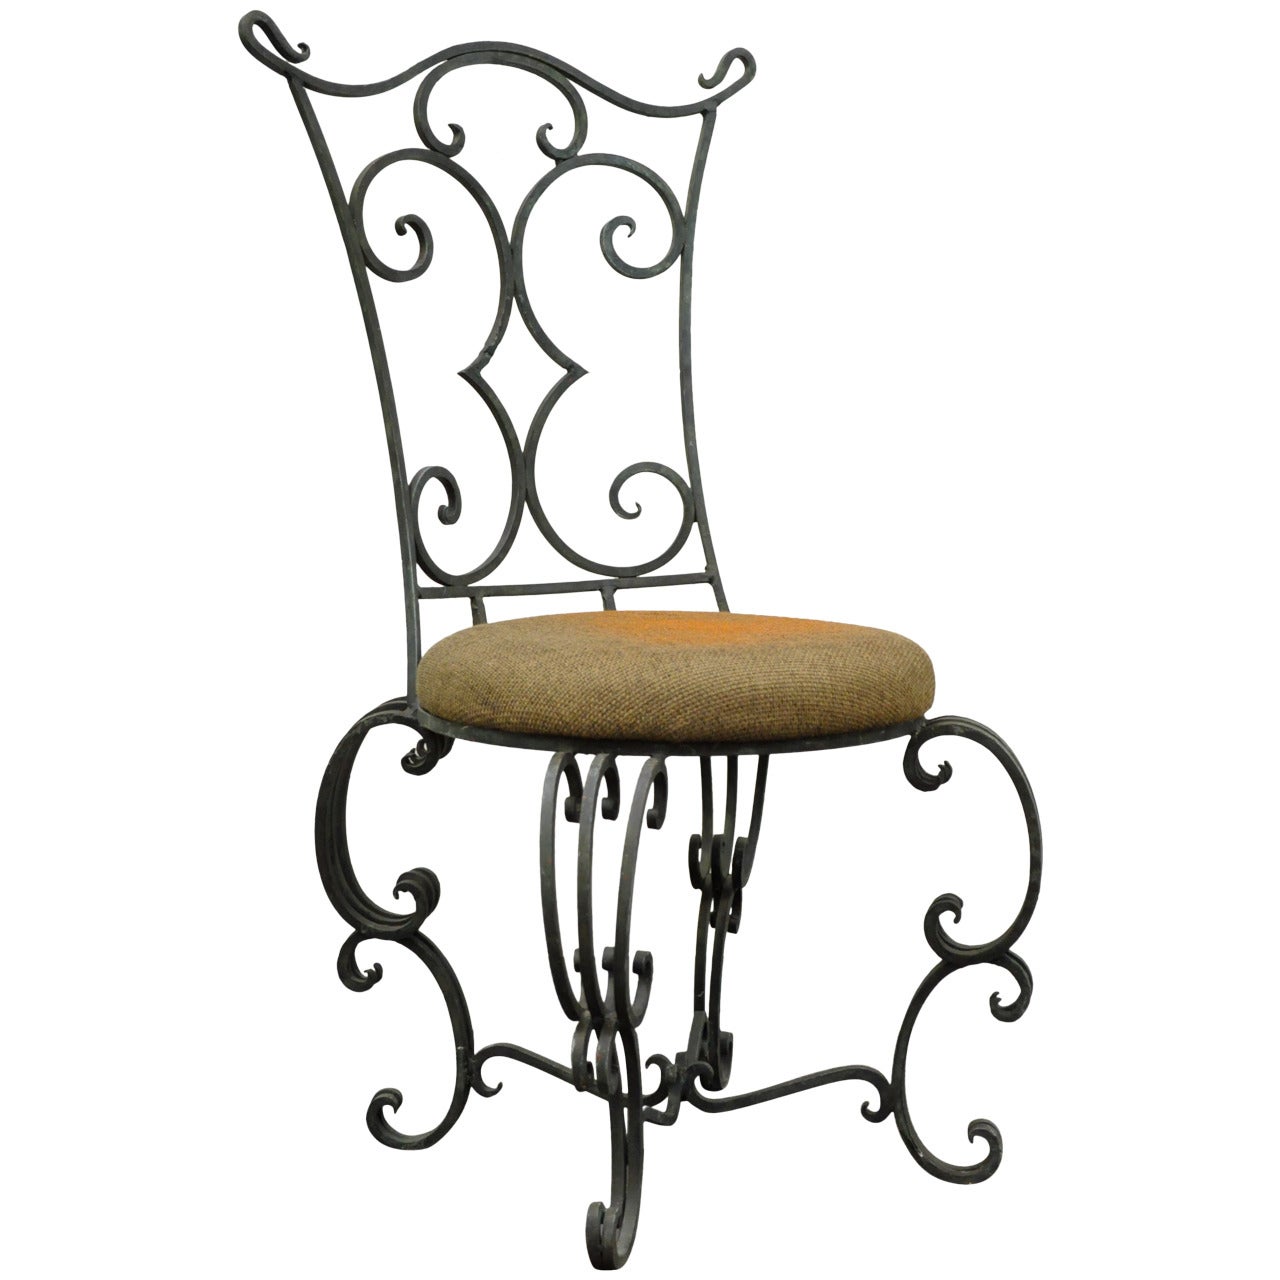 Ancienne chaise d'appoint en fer forgé de style Art Nouveau forgé à la main et à enroulement